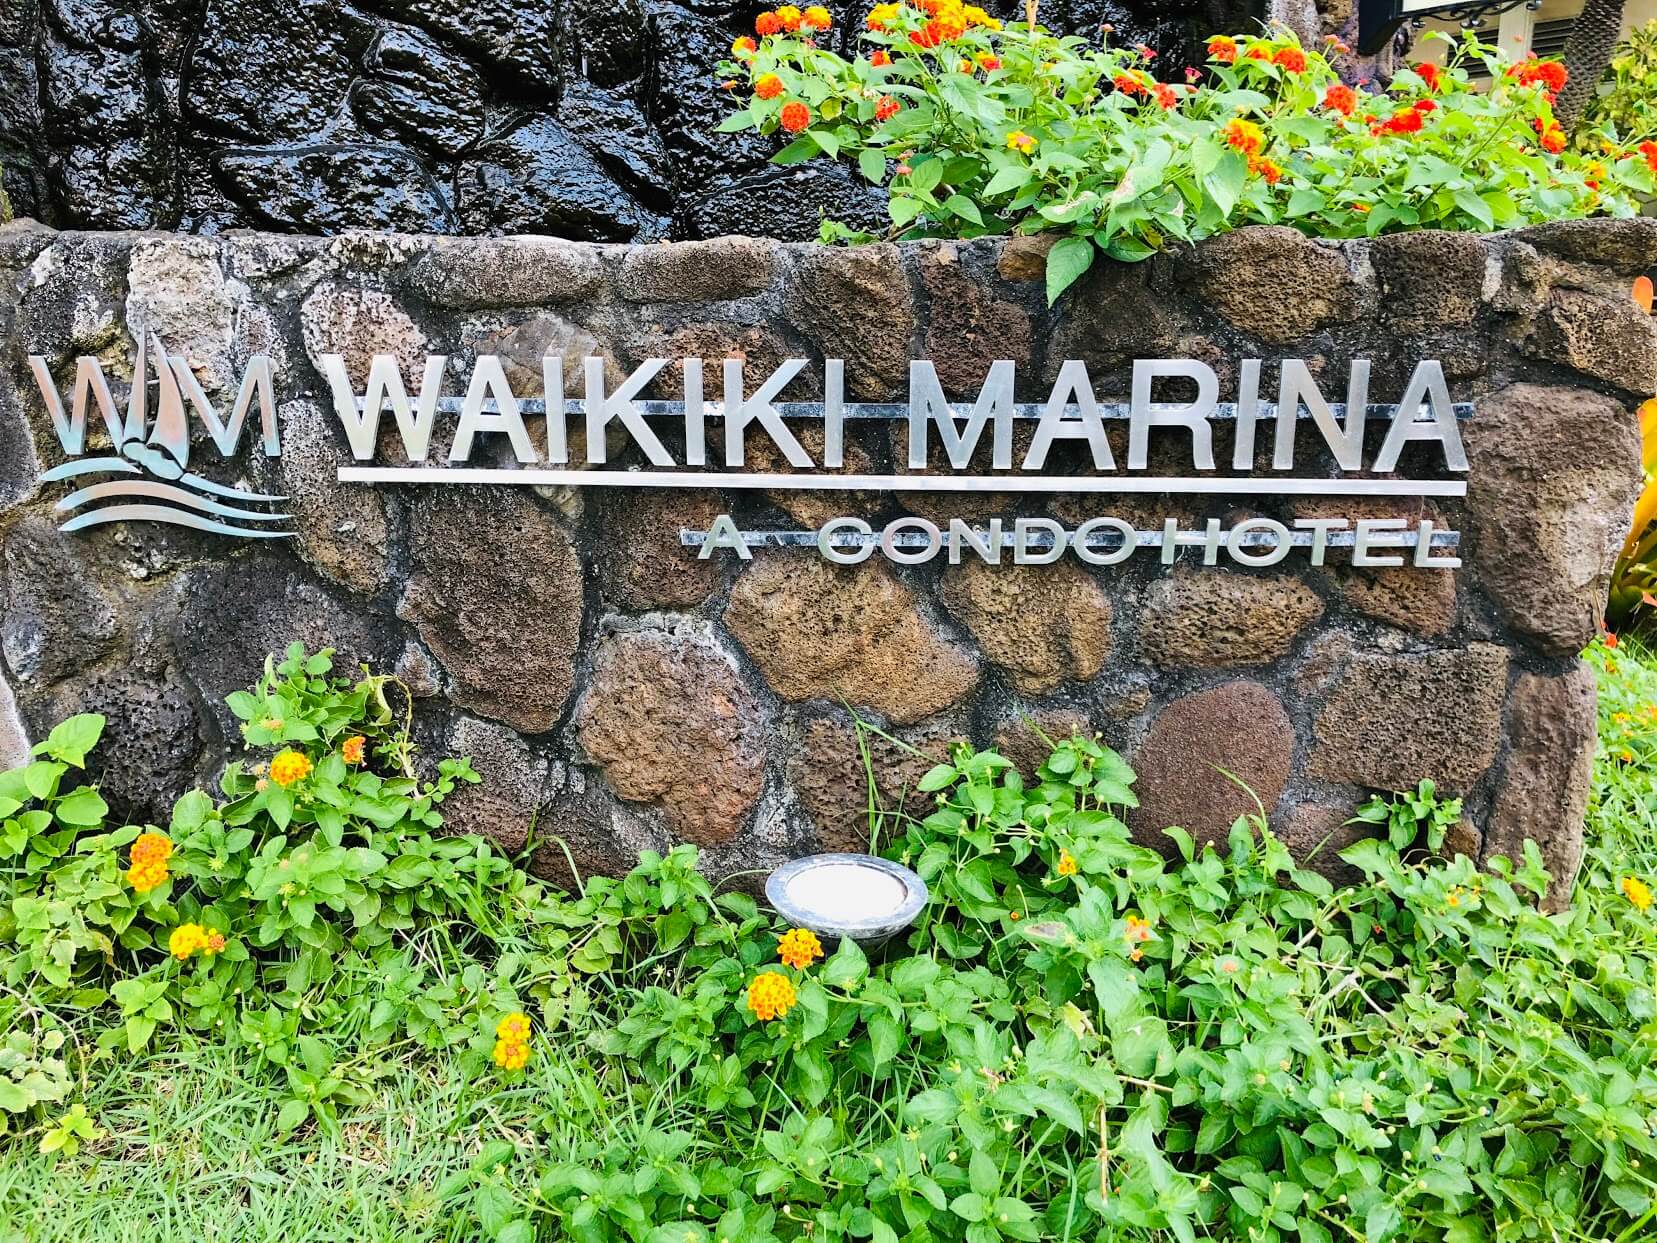 Waikiki Marinaの看板